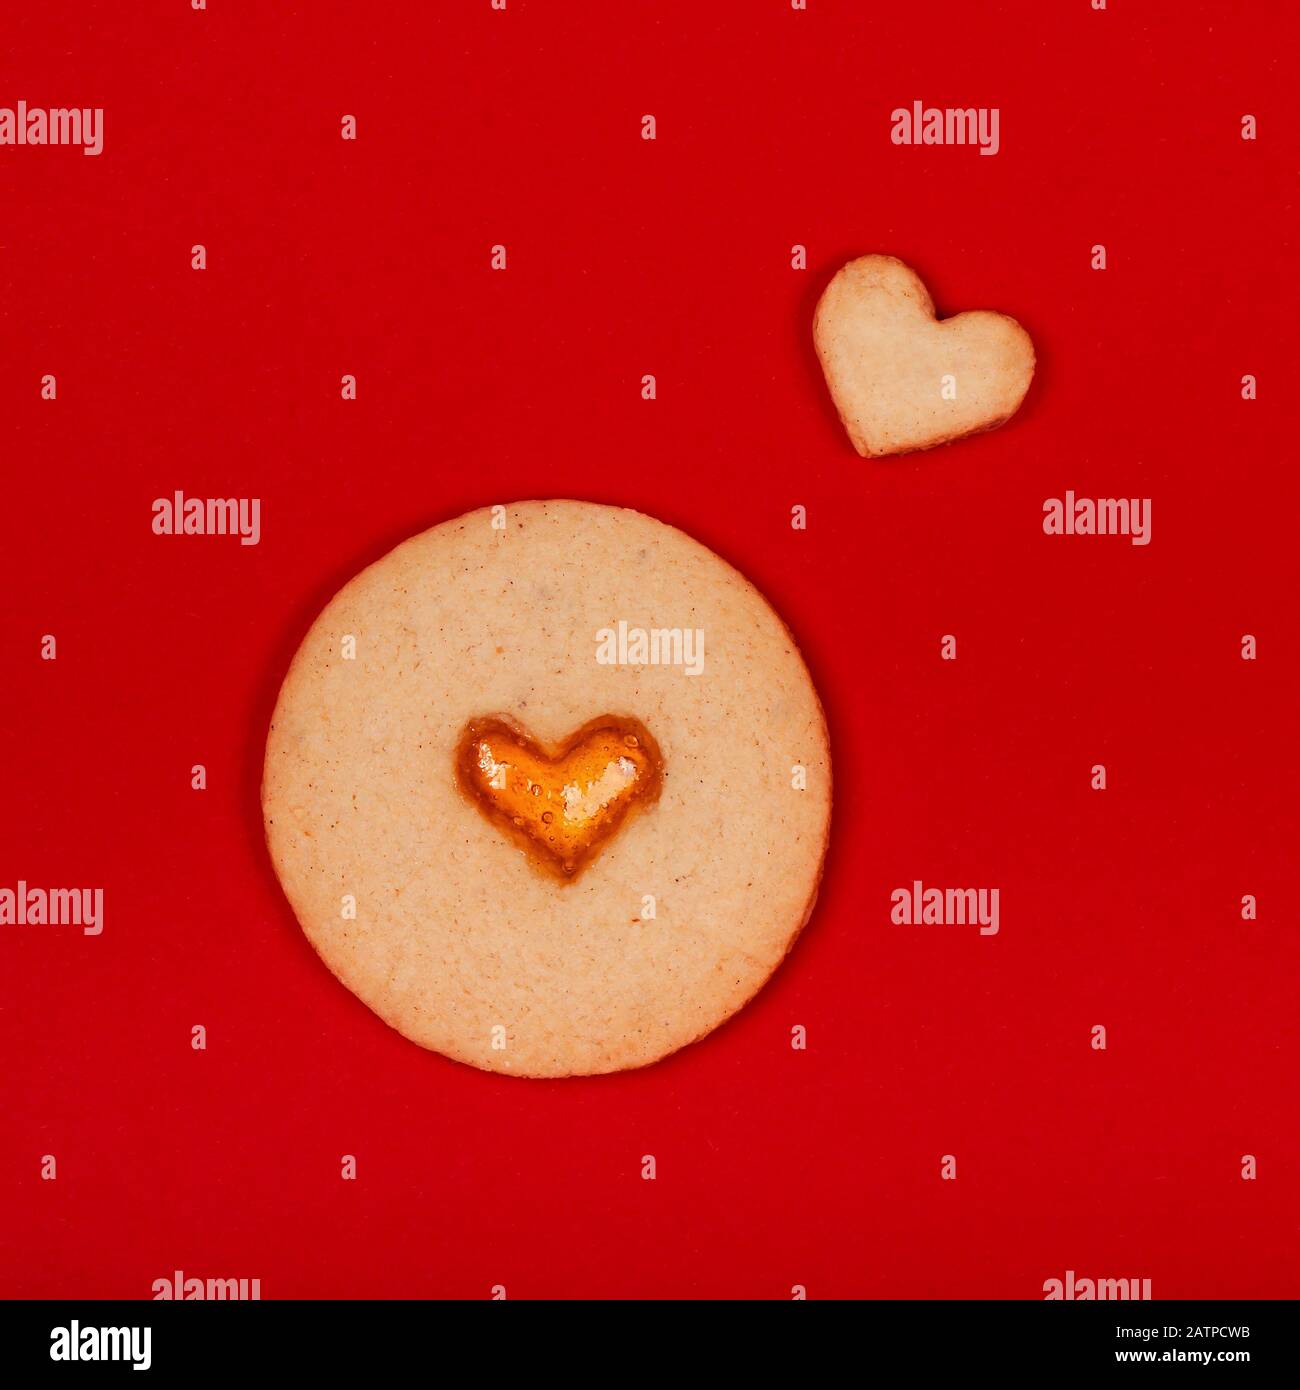 Galletas hechas a mano en forma de corazón sobre fondo rojo. Concepto del día de San Valentín, sorpresas con amor, vacaciones, etc. plano. Foto de stock